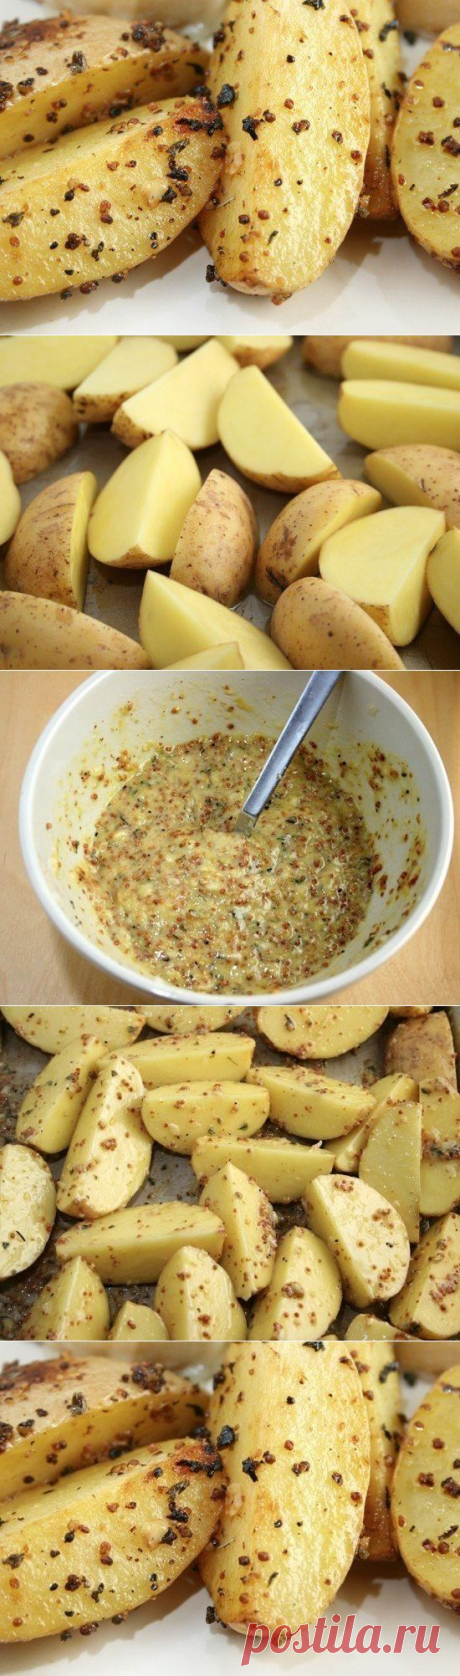 Как приготовить картофель, запеченный в горчице. - рецепт, ингридиенты и фотографии